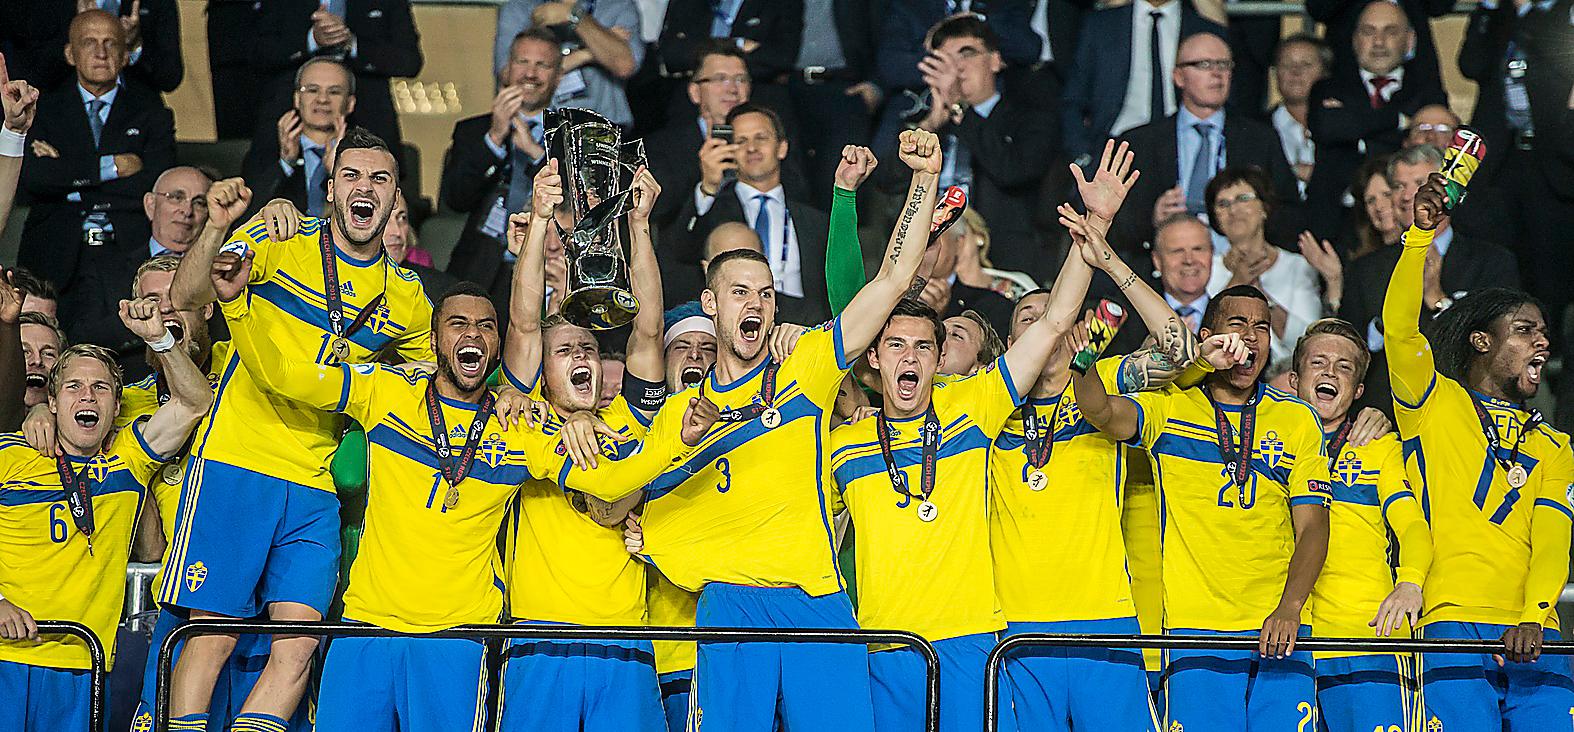 Guldjubel Svenska U21-landslaget efter finalsegern i EM förra året. ”Ett lag som förenar det nya och gamla Sverige”, menar Erik Niva. Foto: Pontus Orre